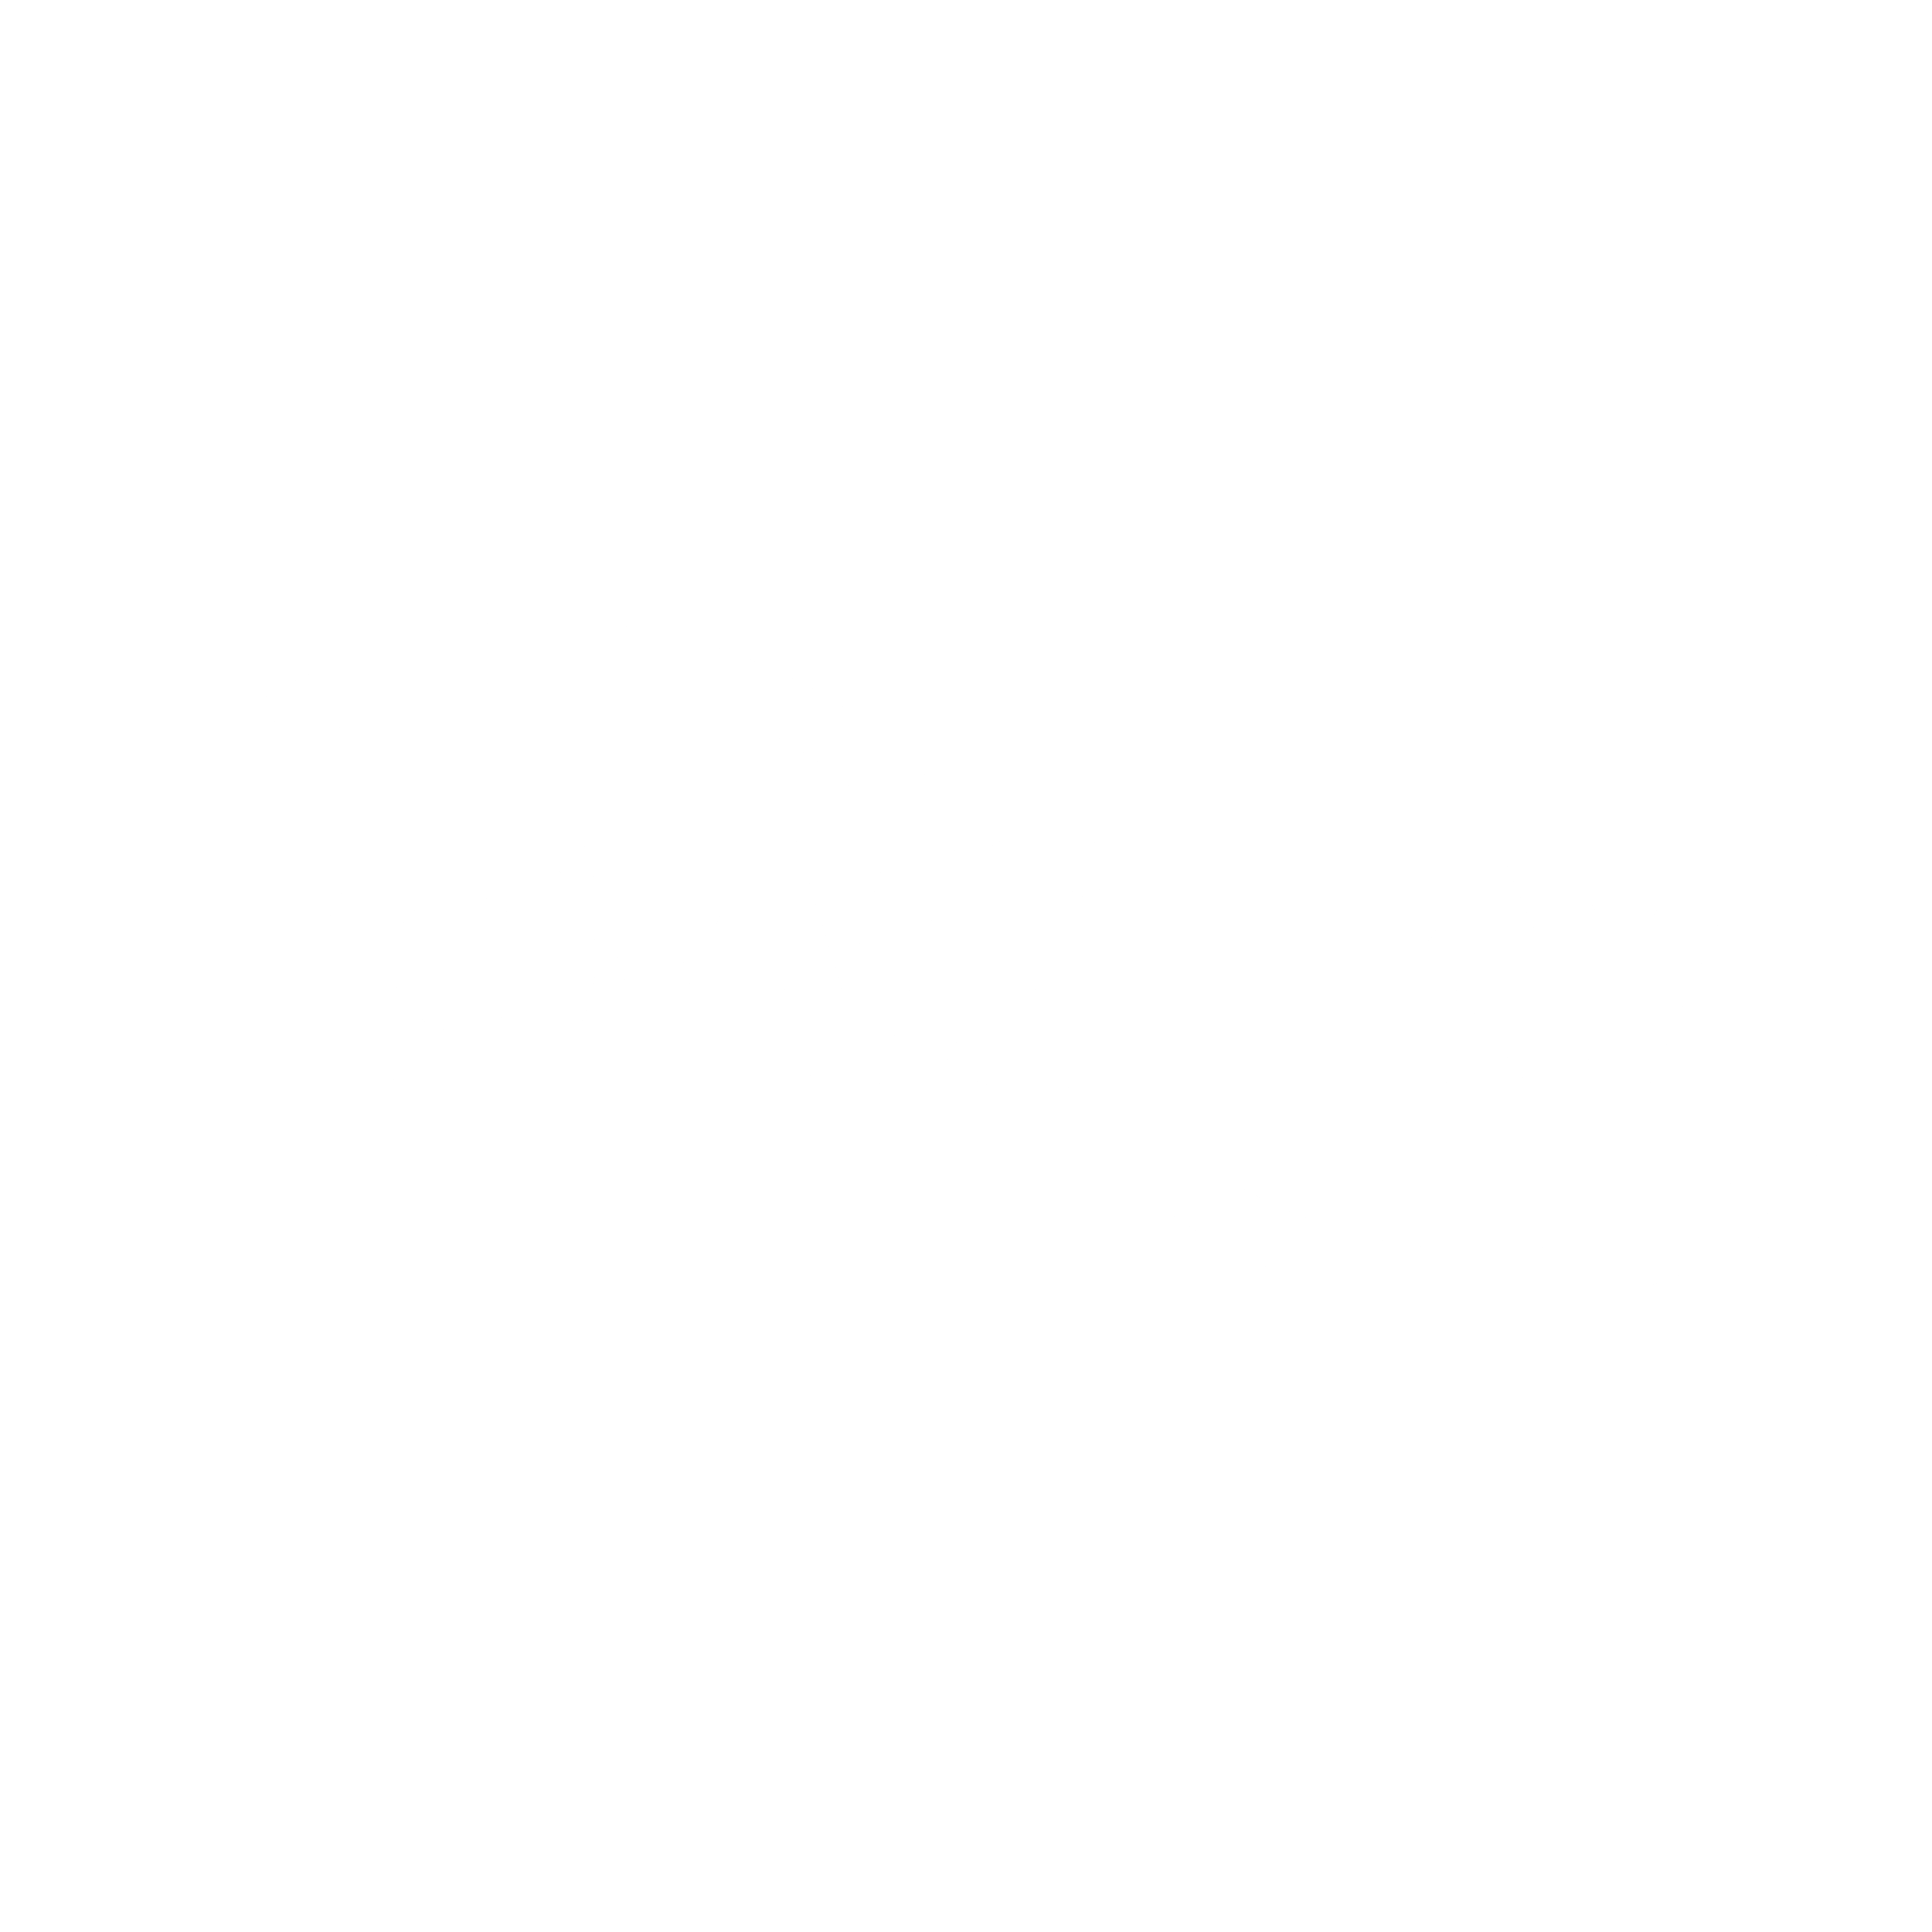 Flowserve Logo - Flowserve Logo PNG Transparent & SVG Vector - Freebie Supply